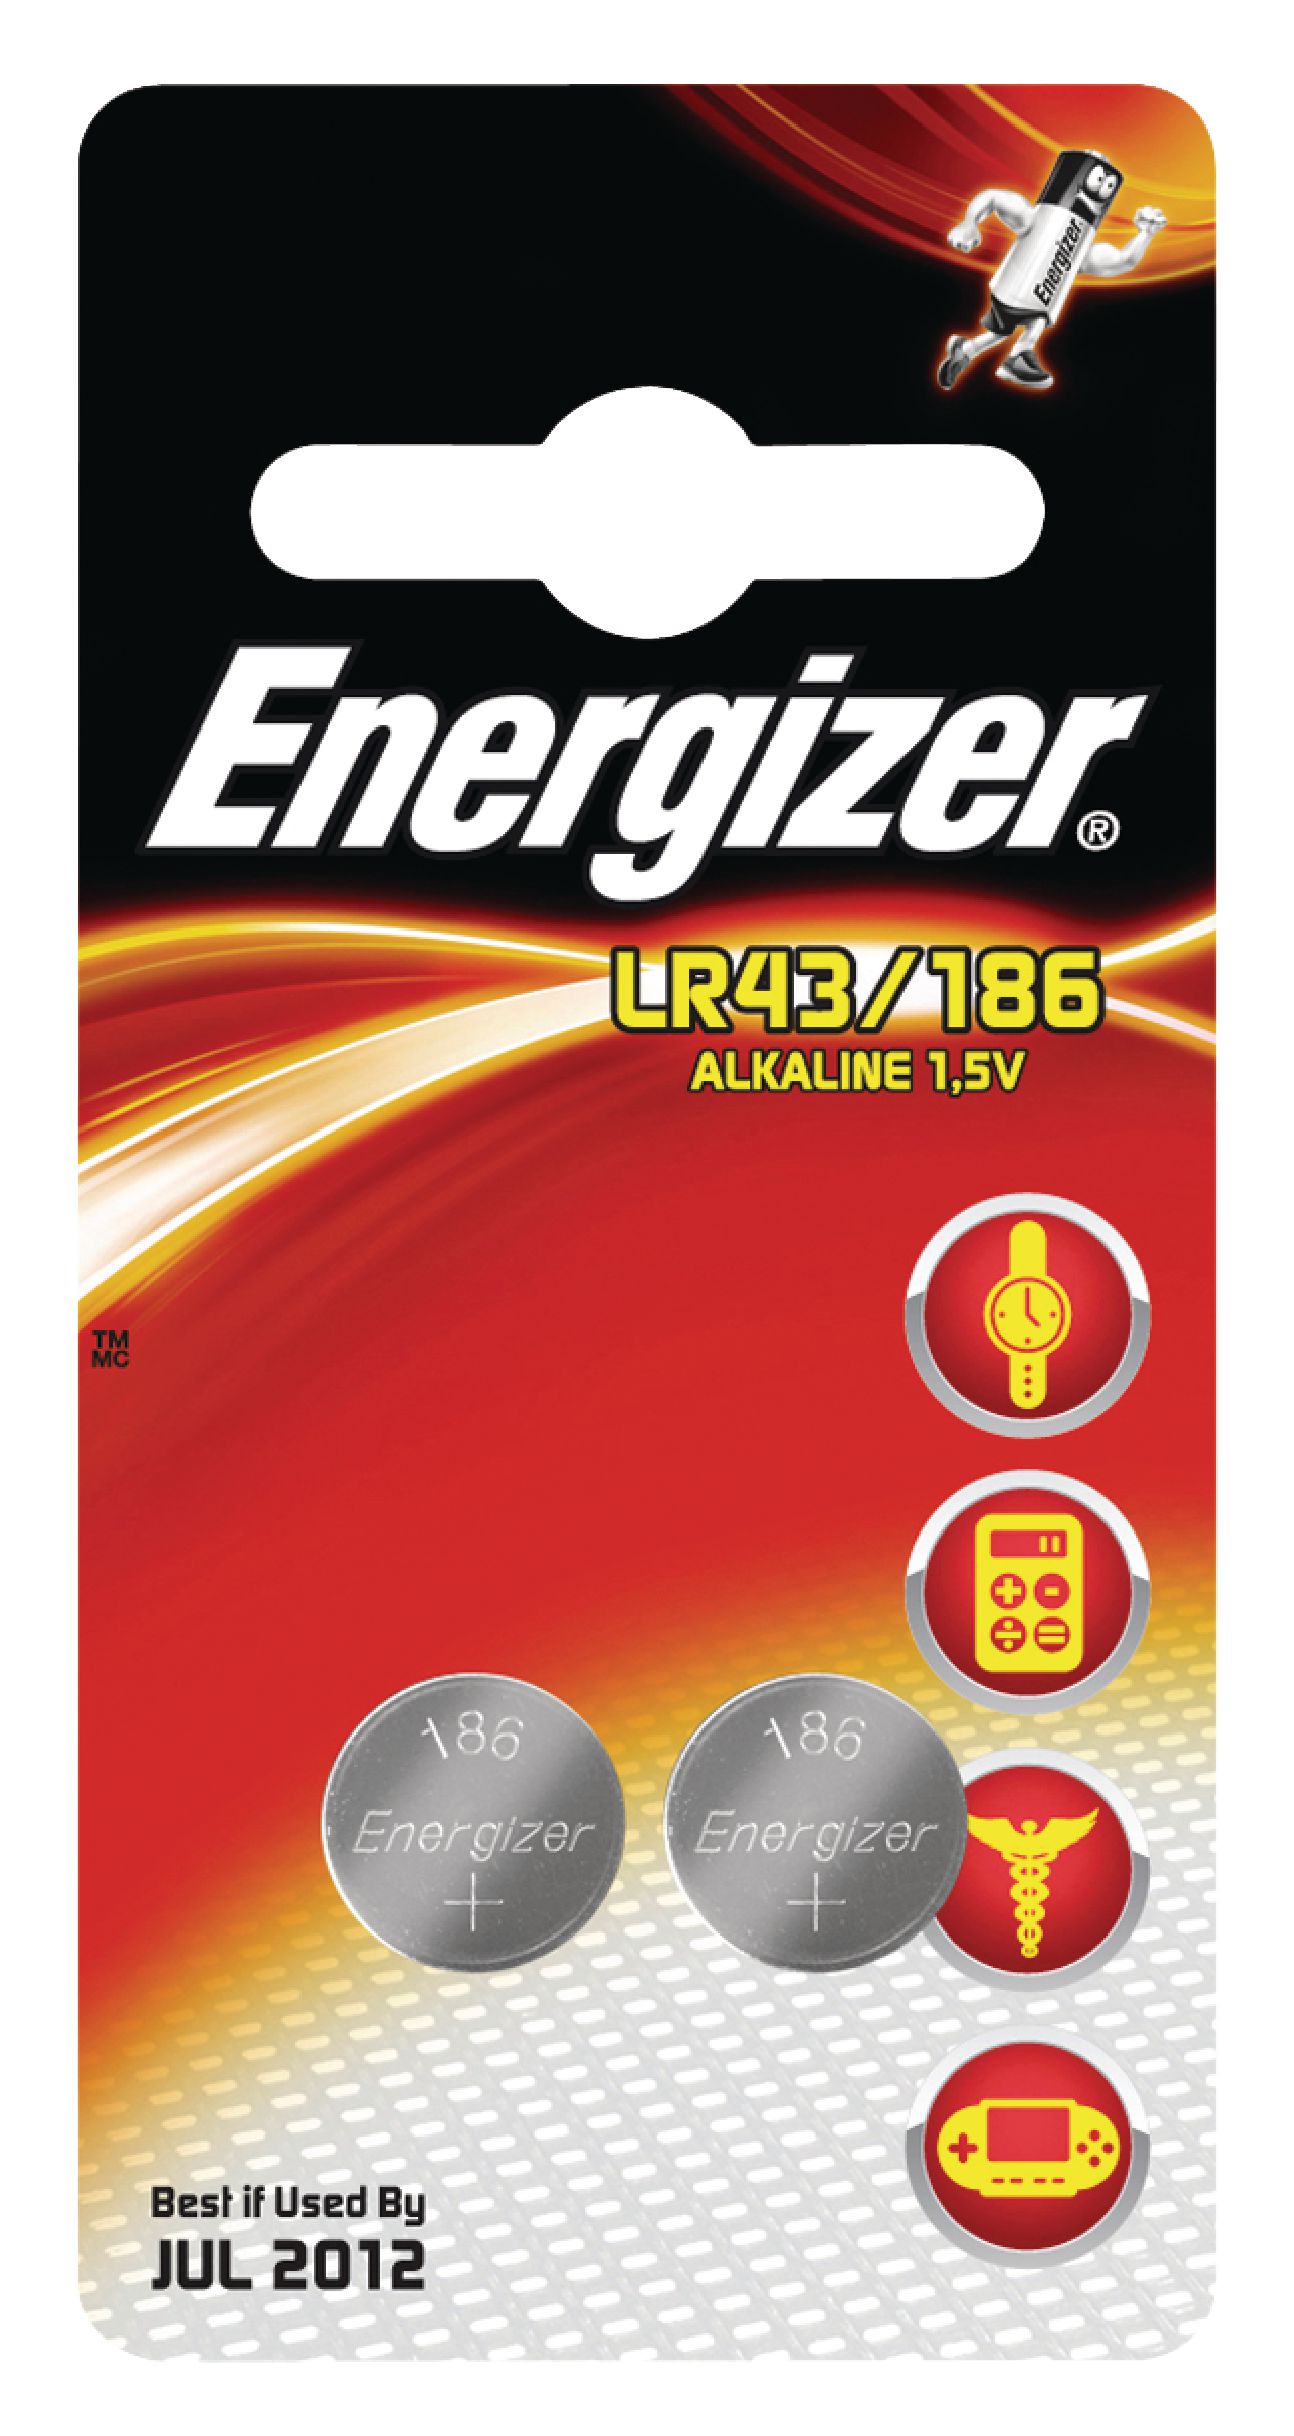 ENERGIZER ENLR43/186 Baterie alkalická LR43 1.5 V 2ks v blistru